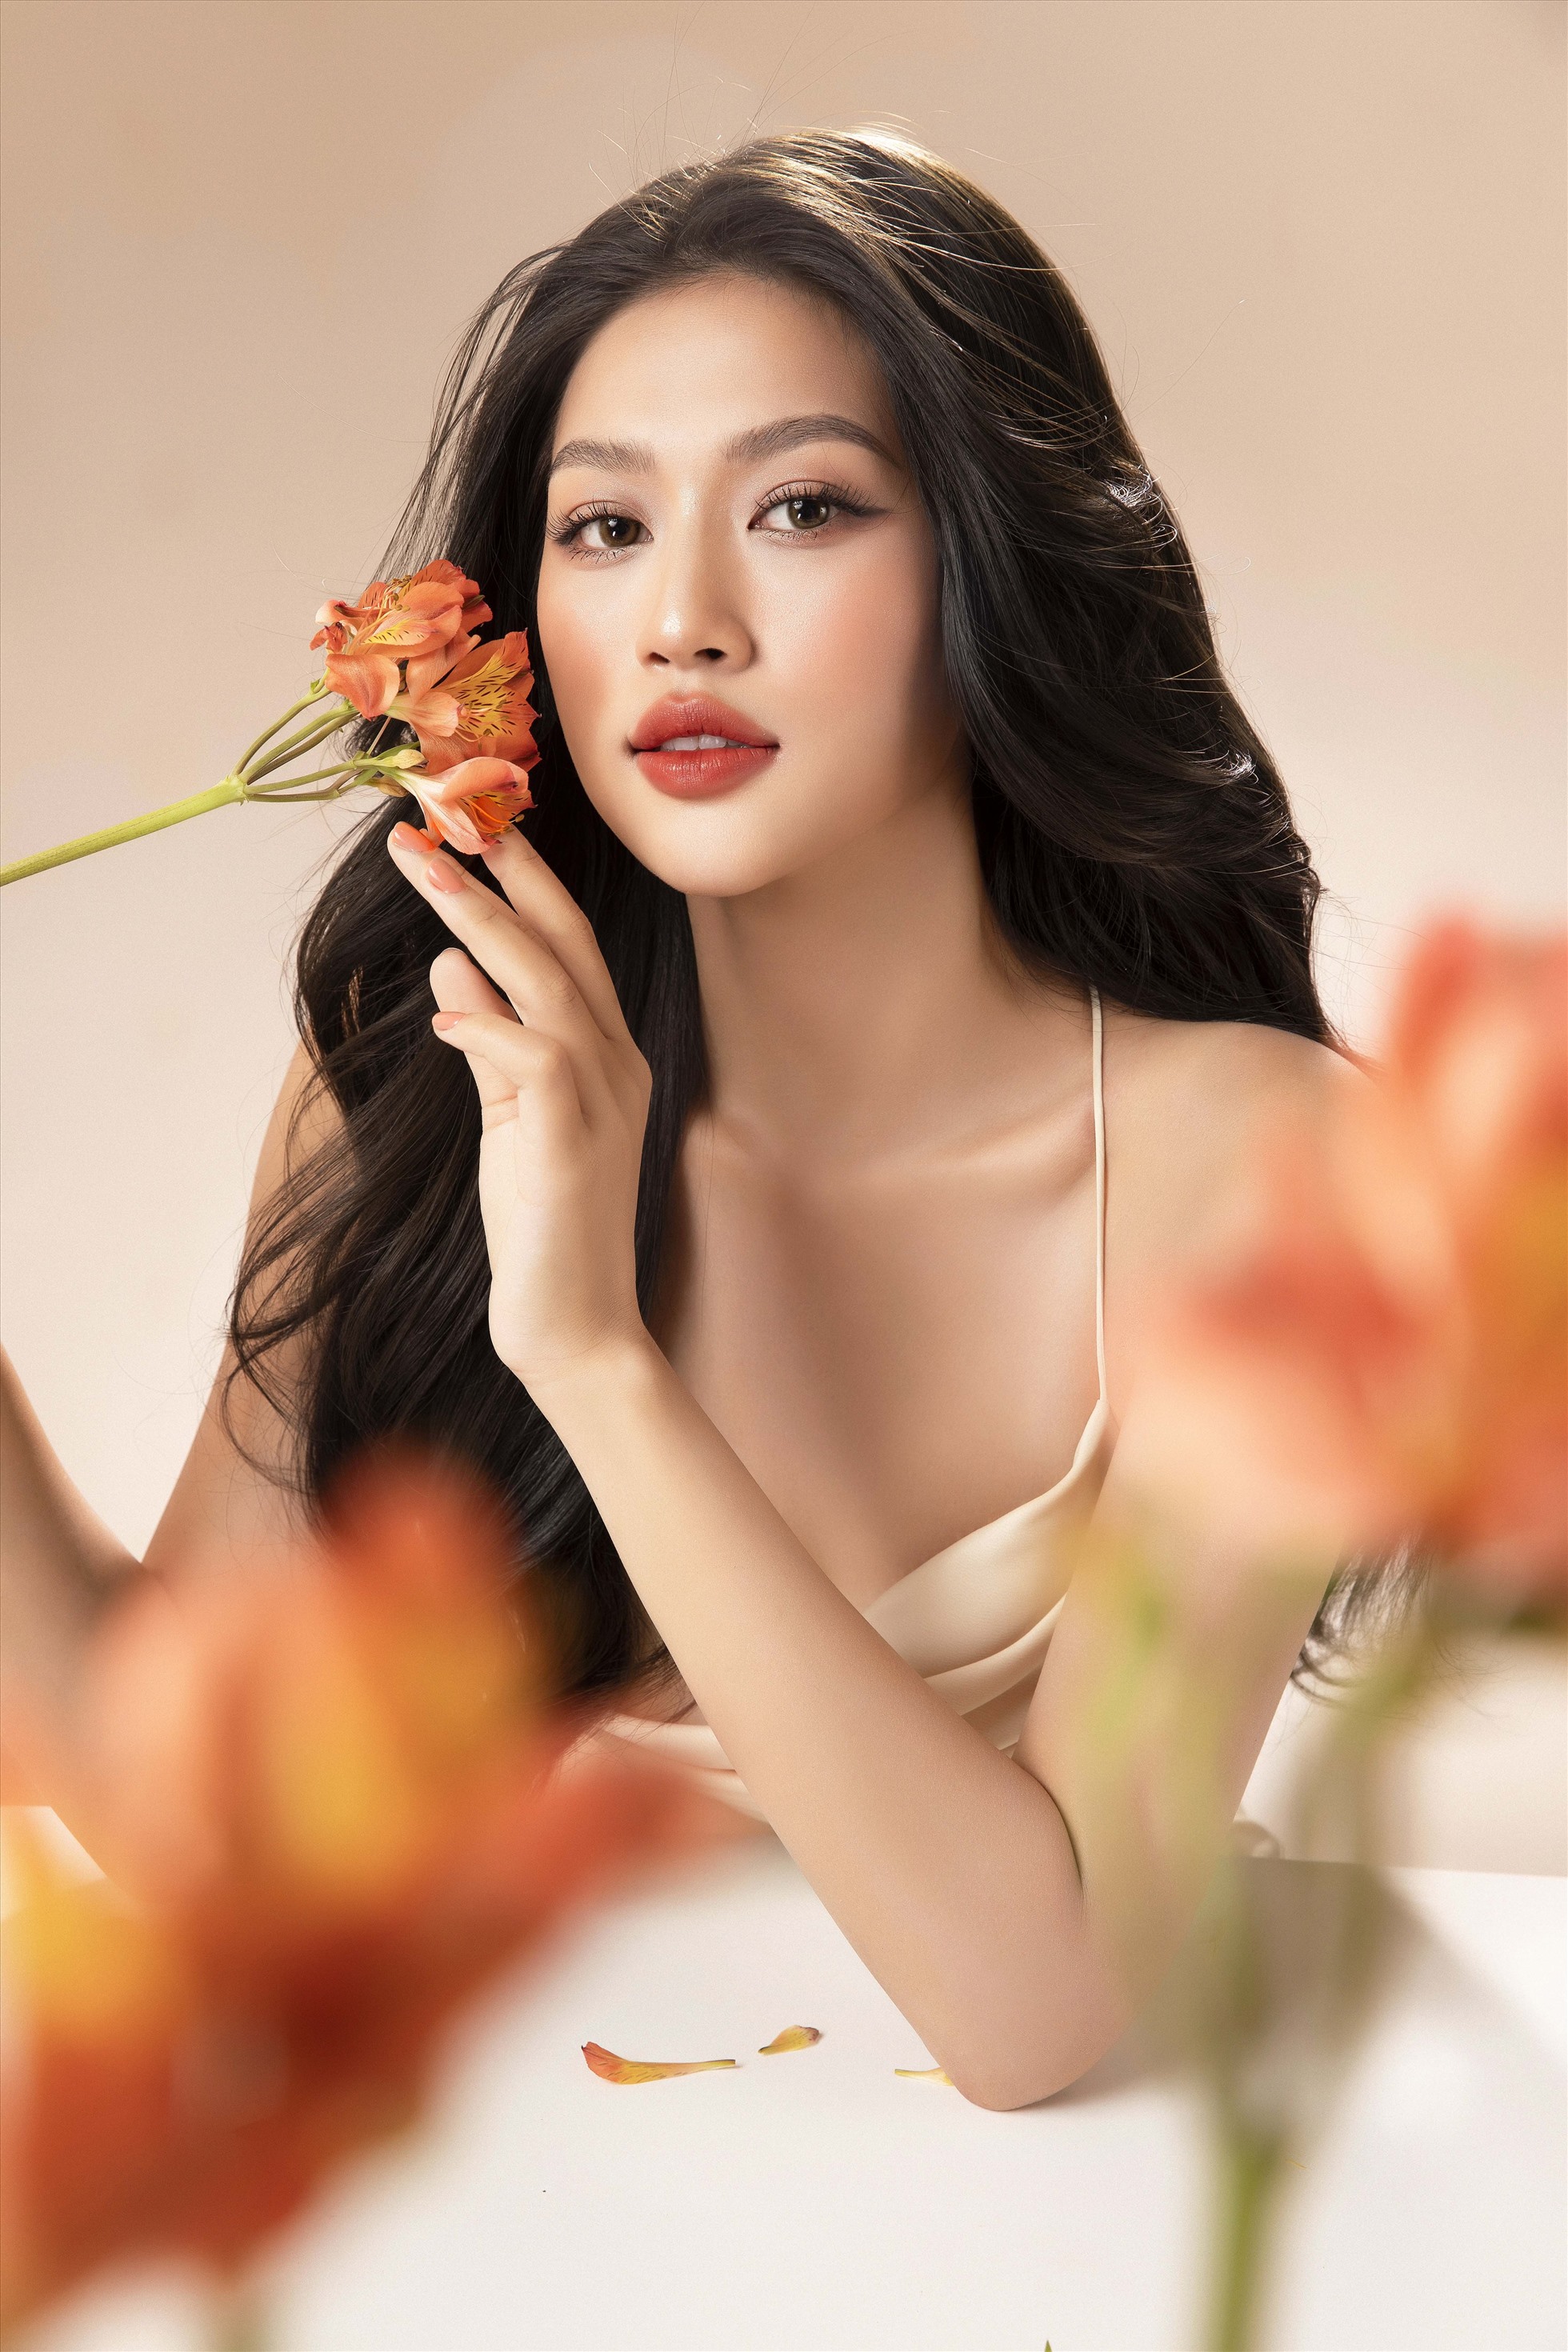 Sở hữu gương mặt “không góc chết”, Miss Grand Vietnam 2022 - Đoàn Thiên  n thể hiện sự tự tin, tạo nên những shoot hình đậm chất thơ, xứng danh “nữ thần thế hệ mới”.